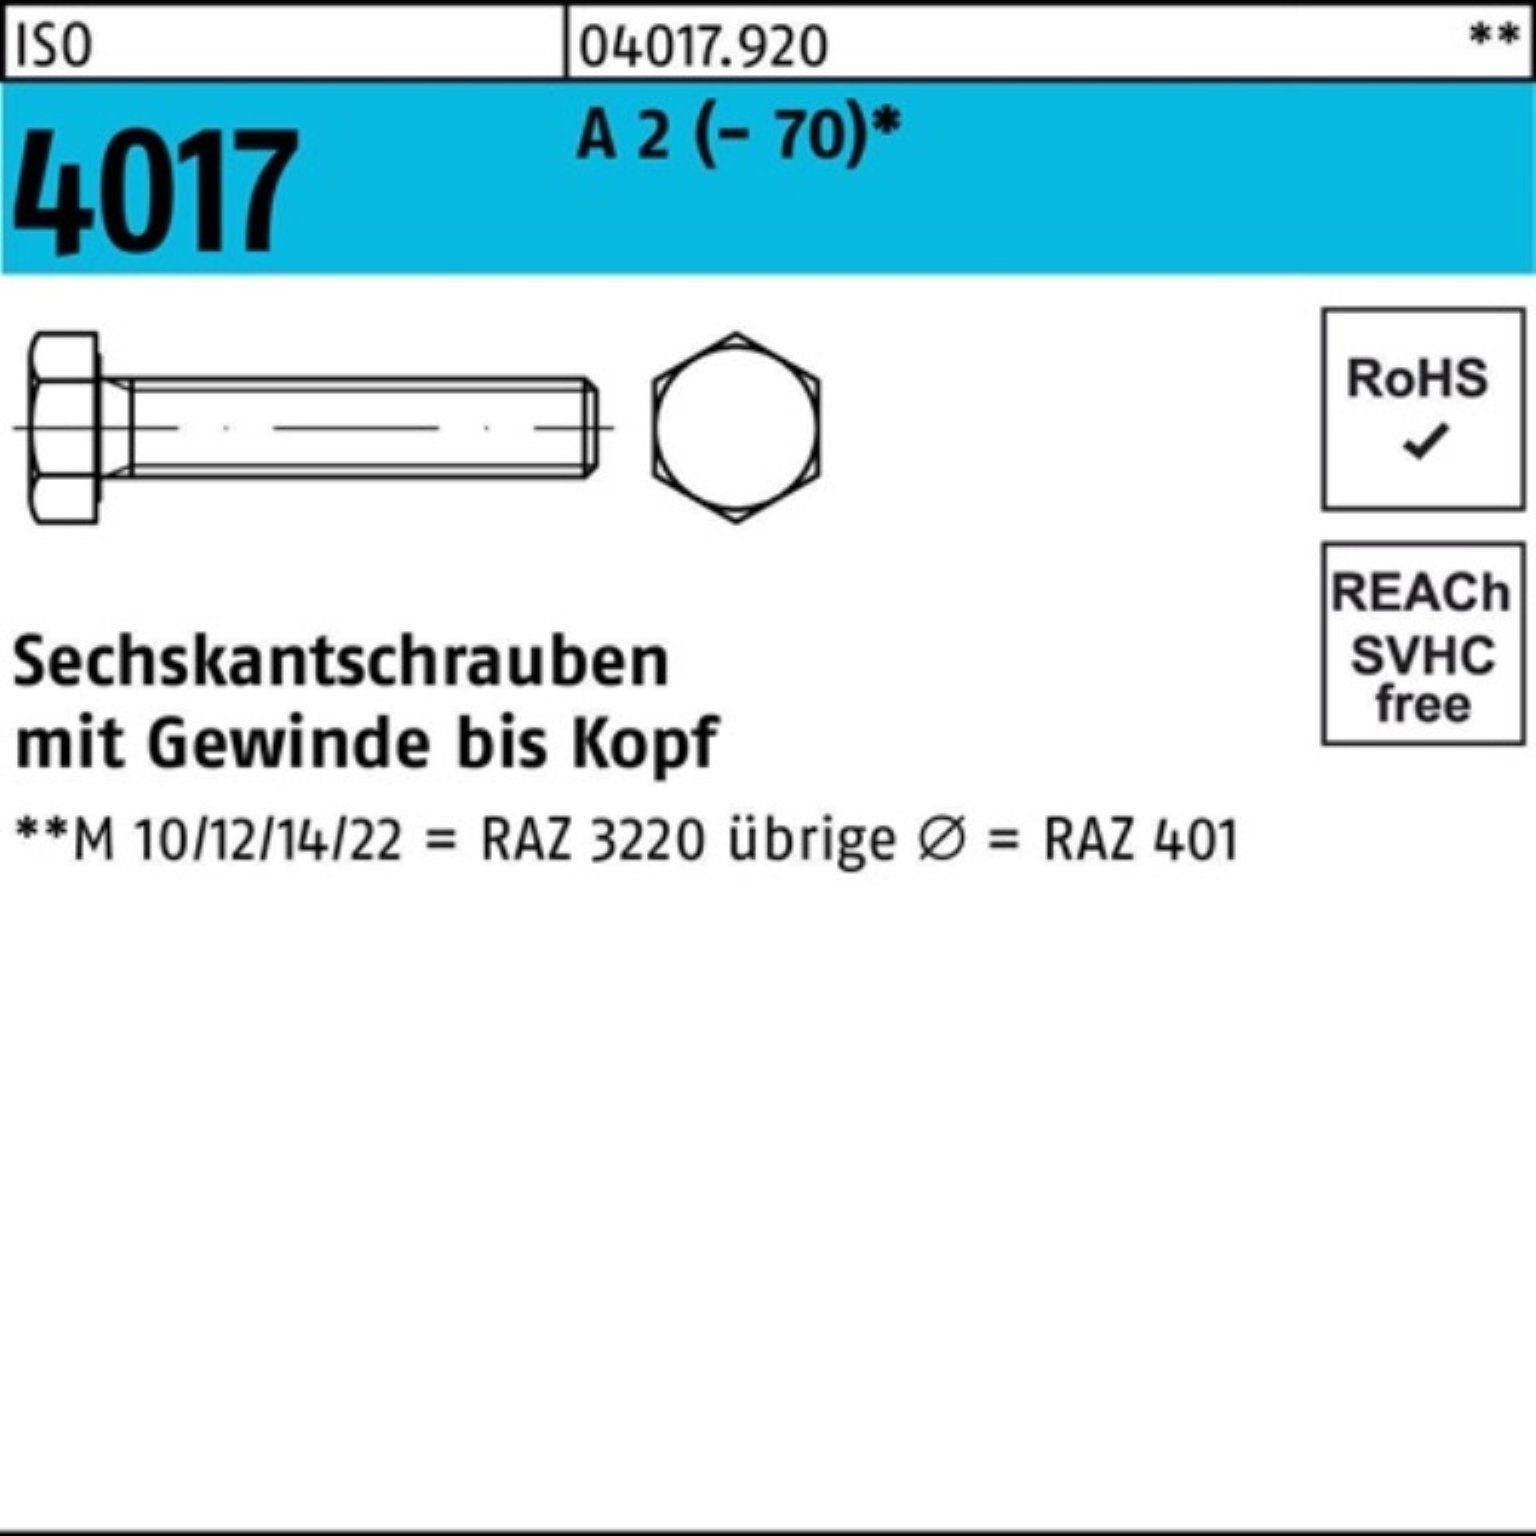 M3x VG 100er Sechskantschraube 100 ISO Stück Sechskantschraube A (70) 2 25 4017 Bufab Pack